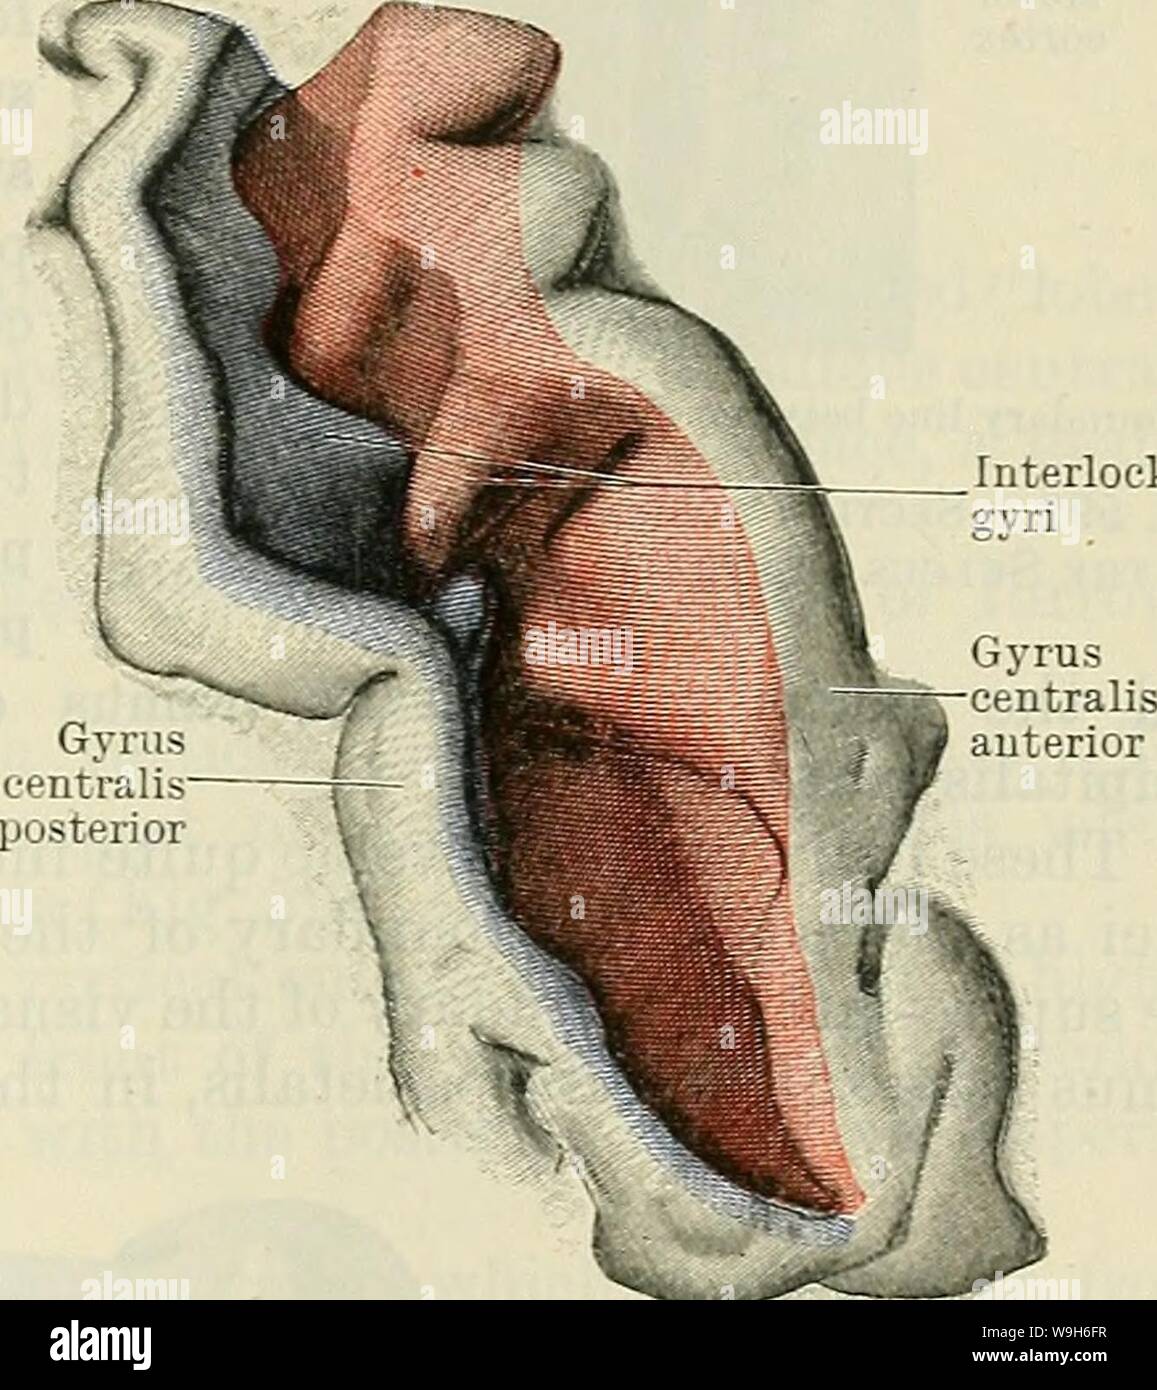 Archiv Bild ab Seite 696 von Cunningham's Lehrbuch der Anatomie (1914) Stockfoto